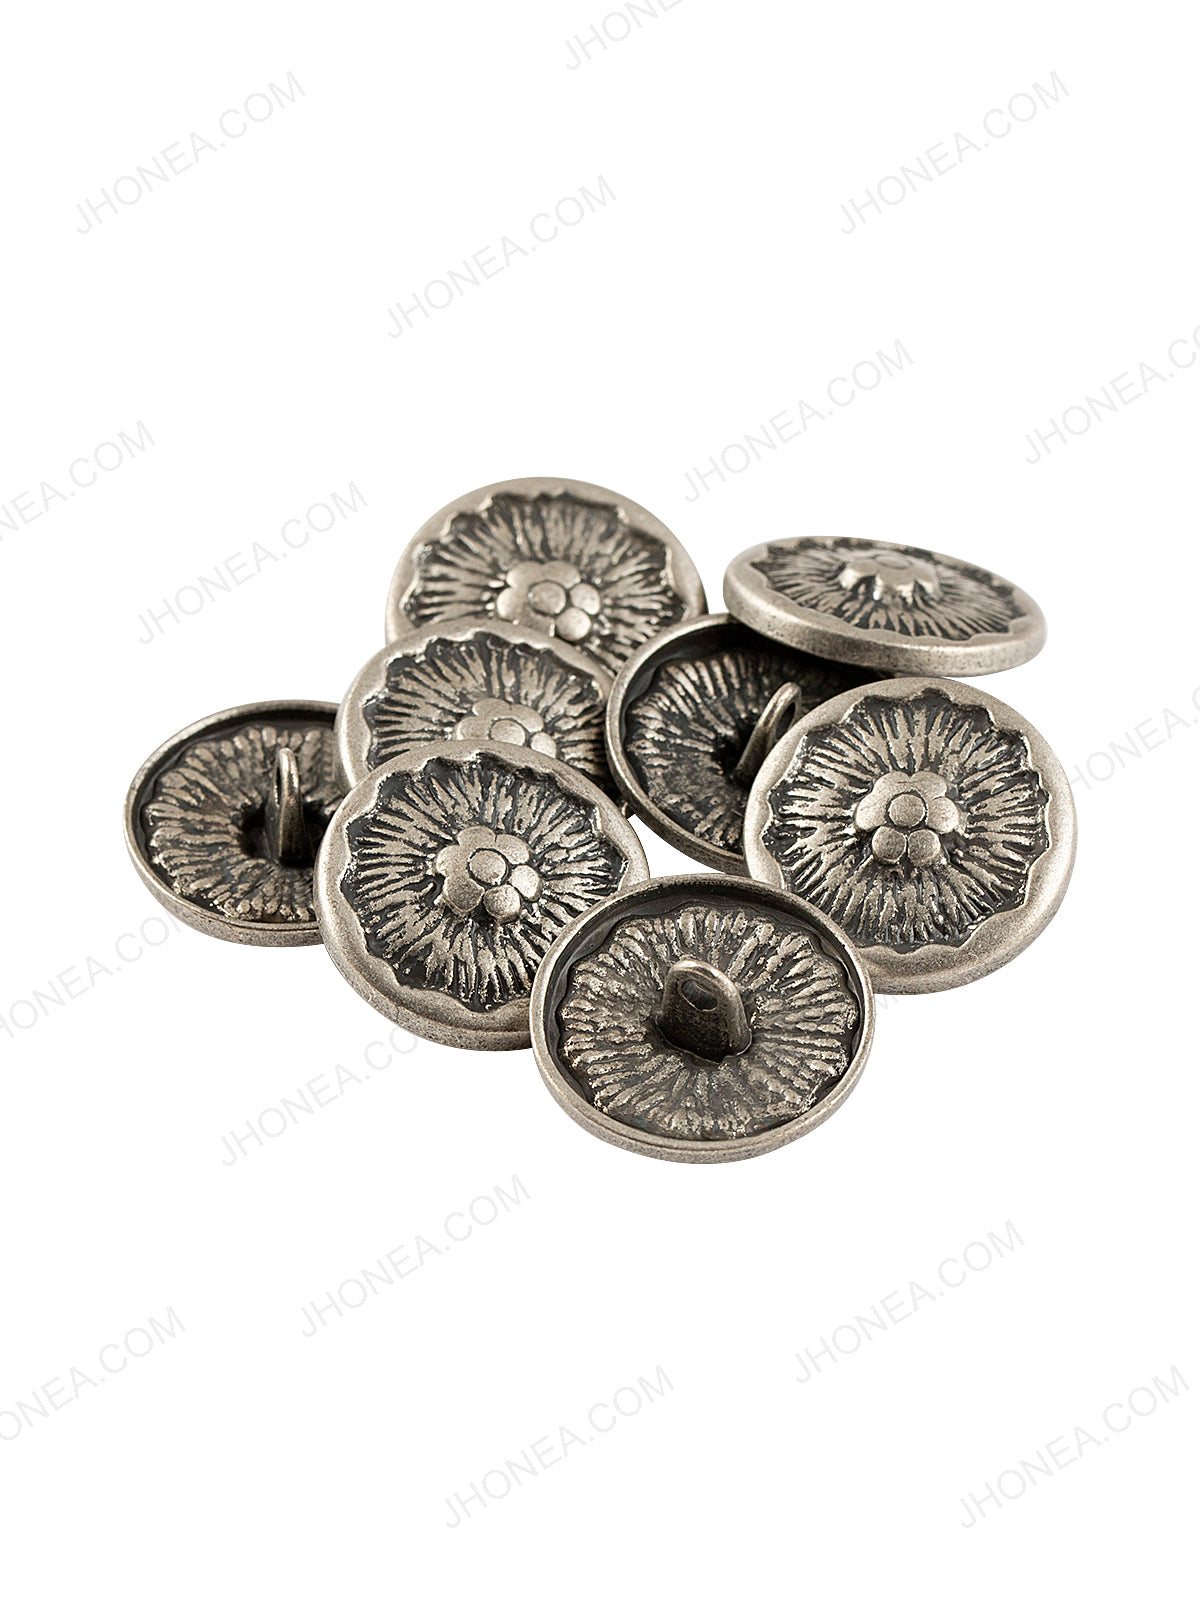 Floral Design Antique Silver Coat Button